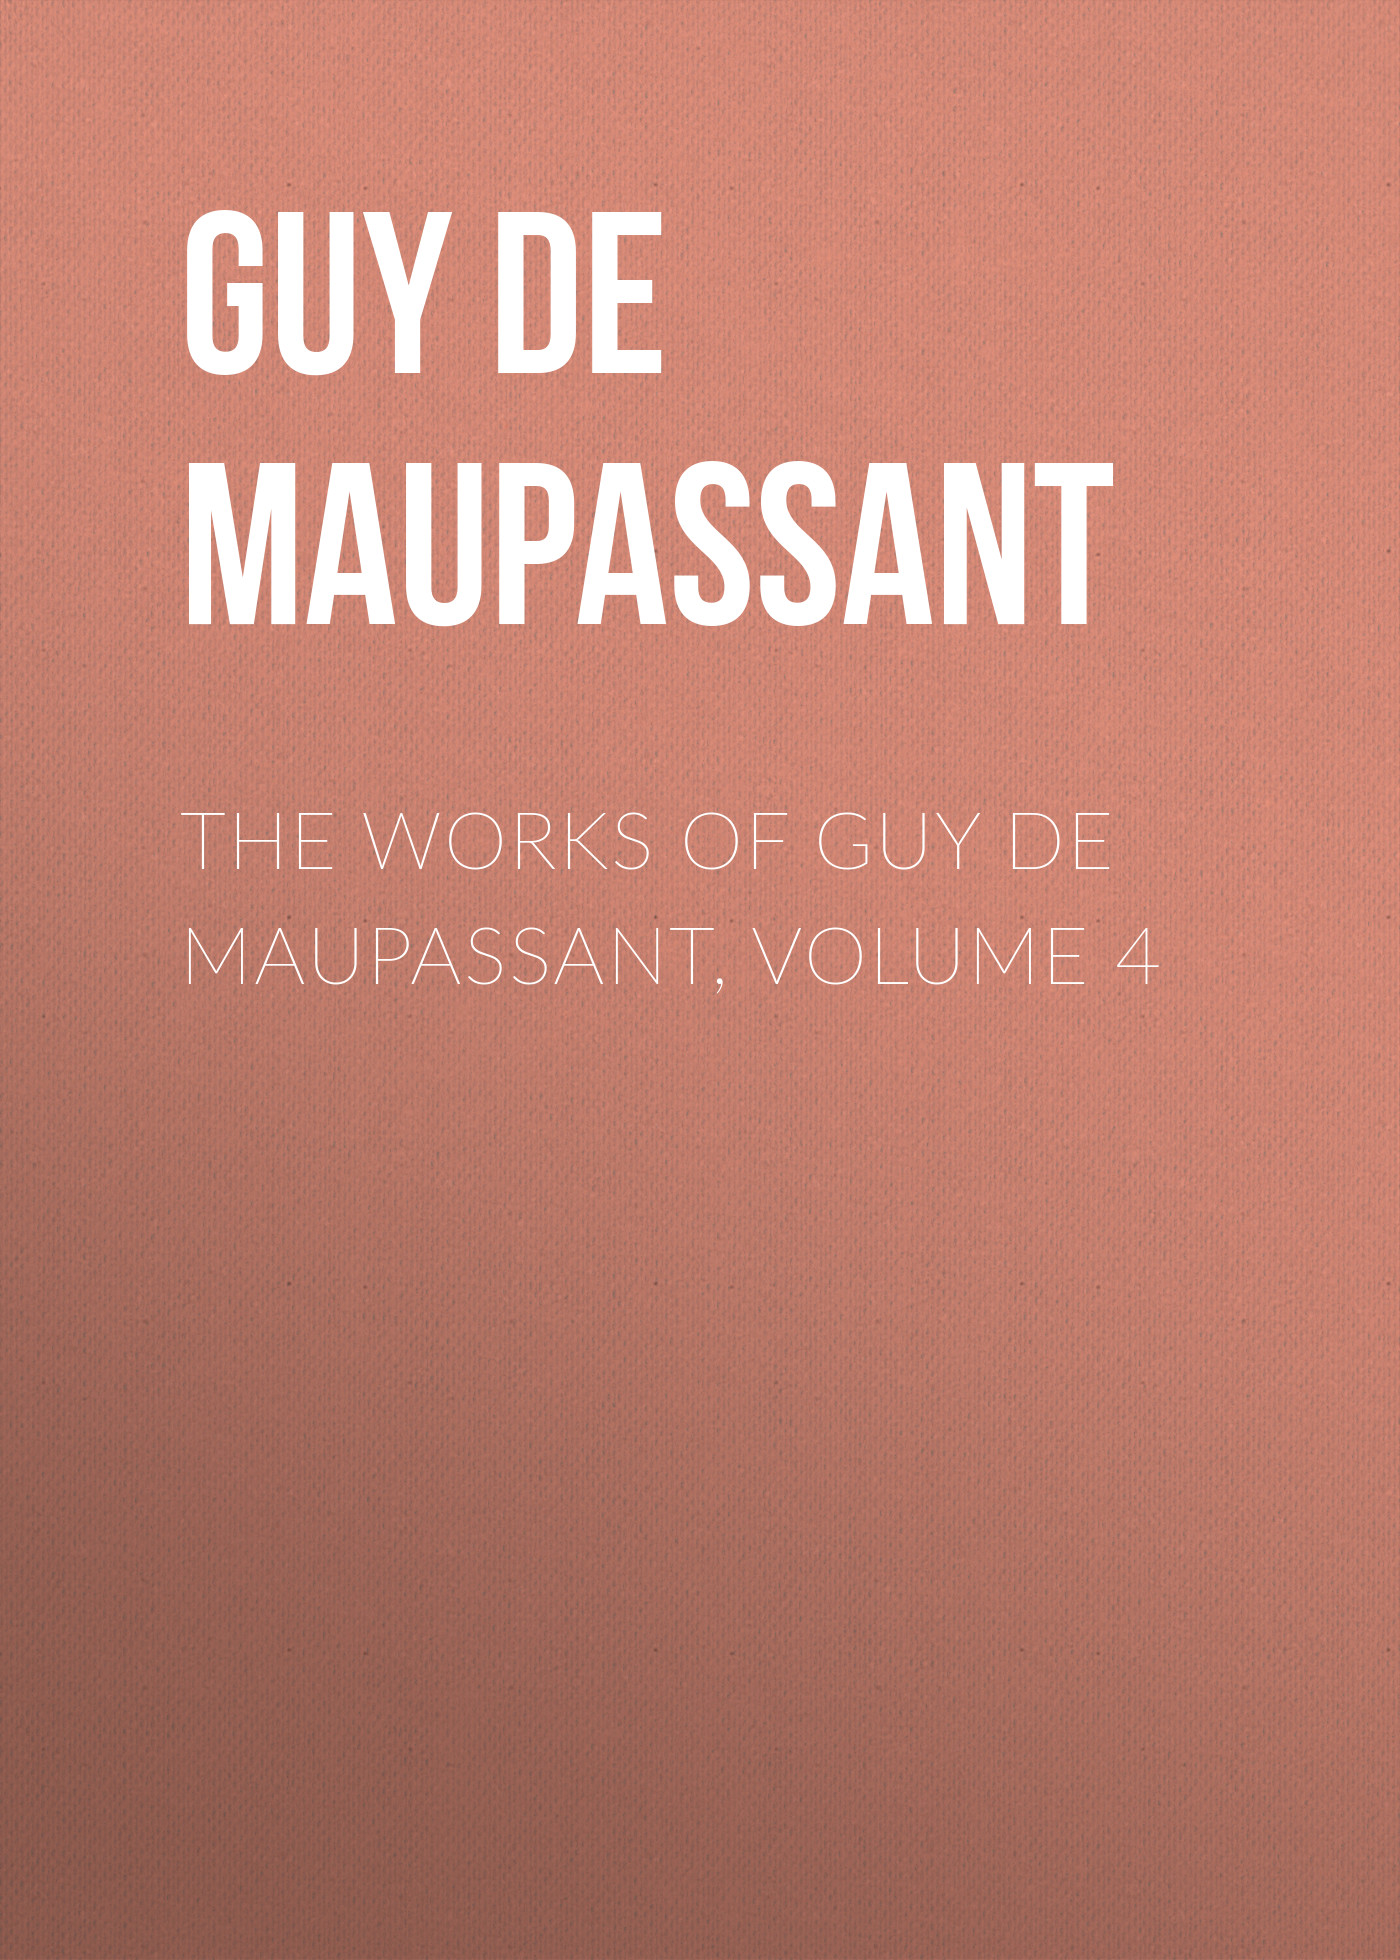 Книга The Works of Guy de Maupassant, Volume 4 из серии , созданная Guy Maupassant, может относится к жанру Литература 19 века, Зарубежная старинная литература, Зарубежная классика. Стоимость электронной книги The Works of Guy de Maupassant, Volume 4 с идентификатором 25292267 составляет 0 руб.